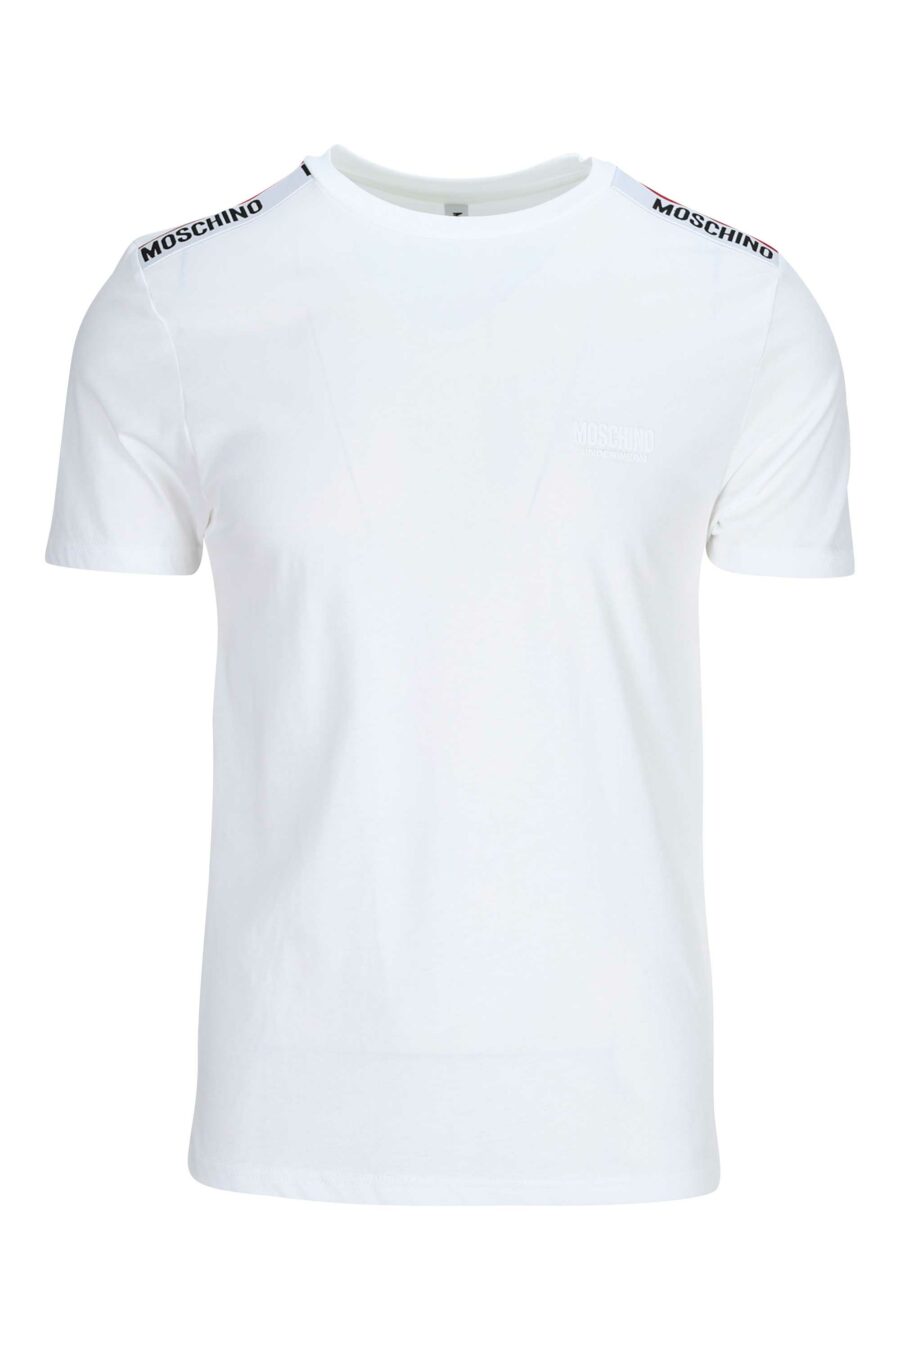 T-shirt branca com logótipo nos ombros em fita - 667113024998